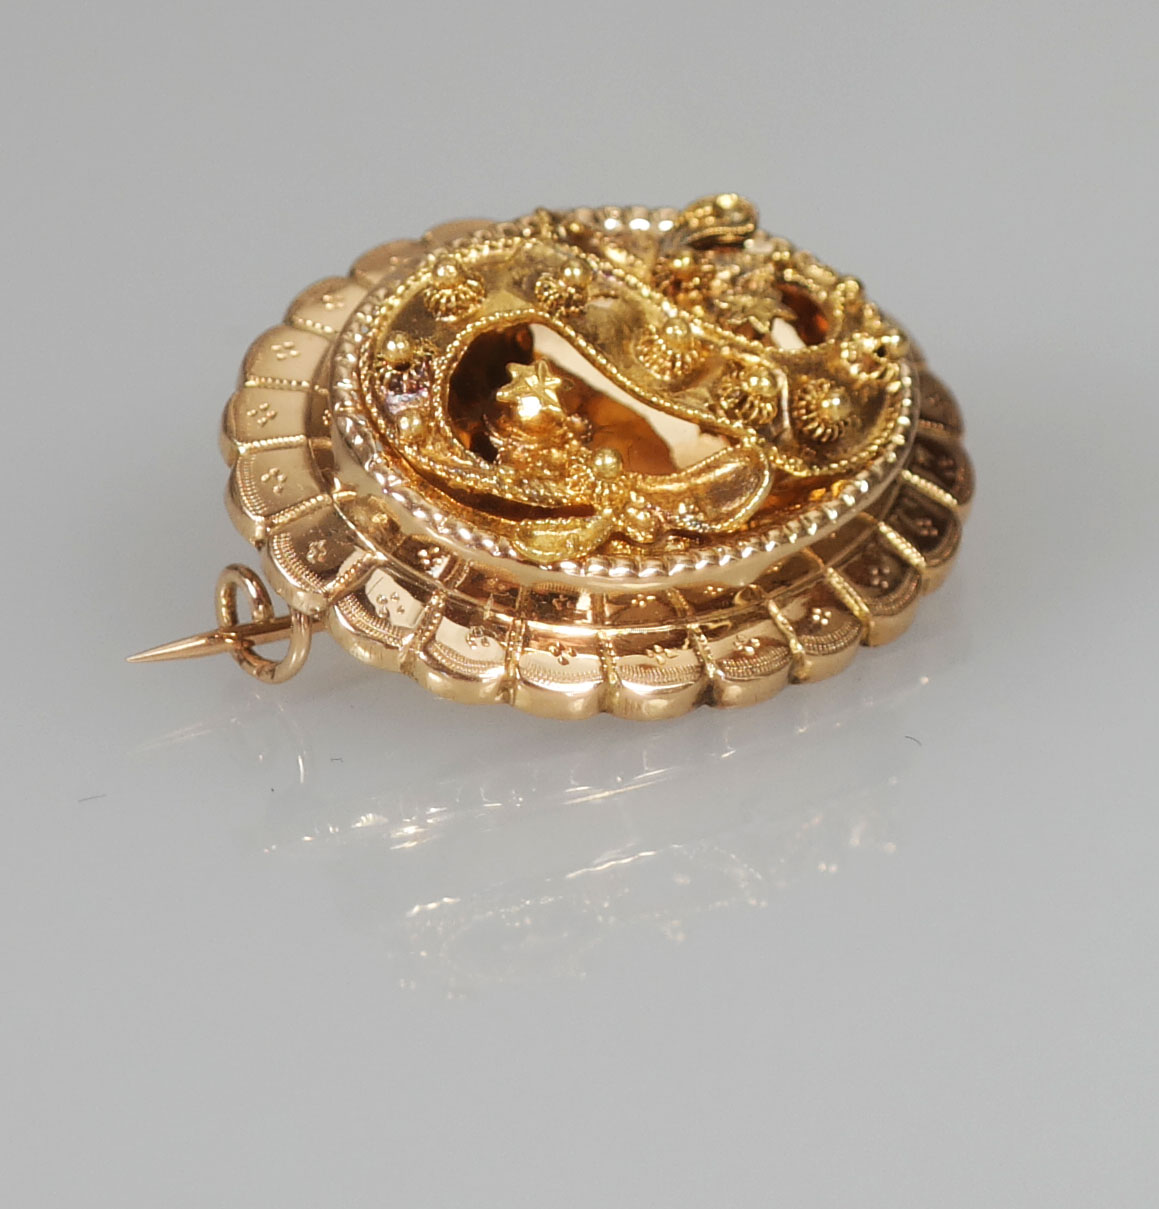 spek Woning weigeren Antieke gouden streekdracht broche - Antieke Sieraden - Kroone & Co